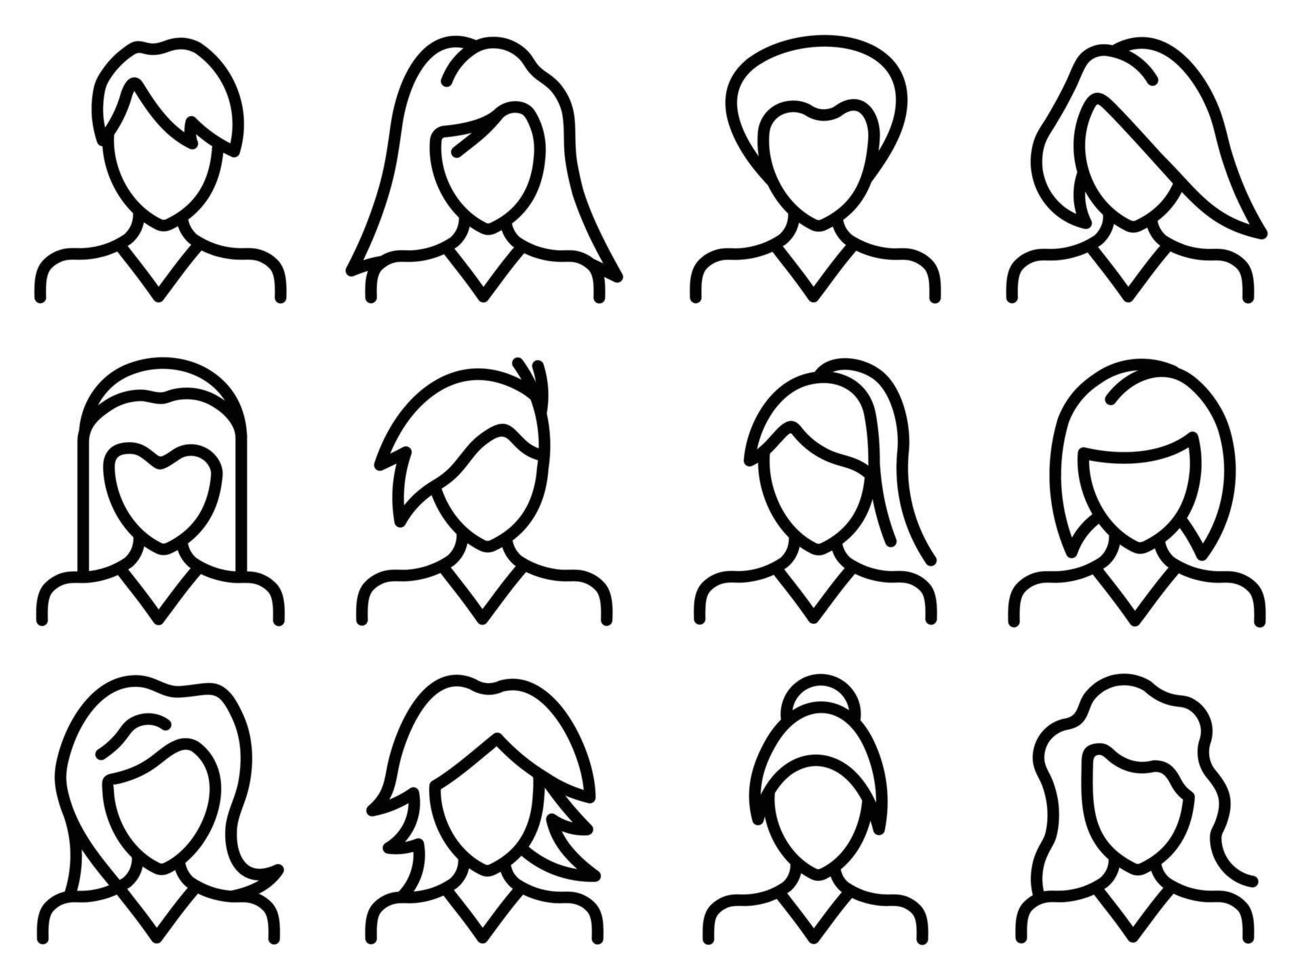 Menschen Avatar Icon Set, Vektor flaches Symbol als weiblich